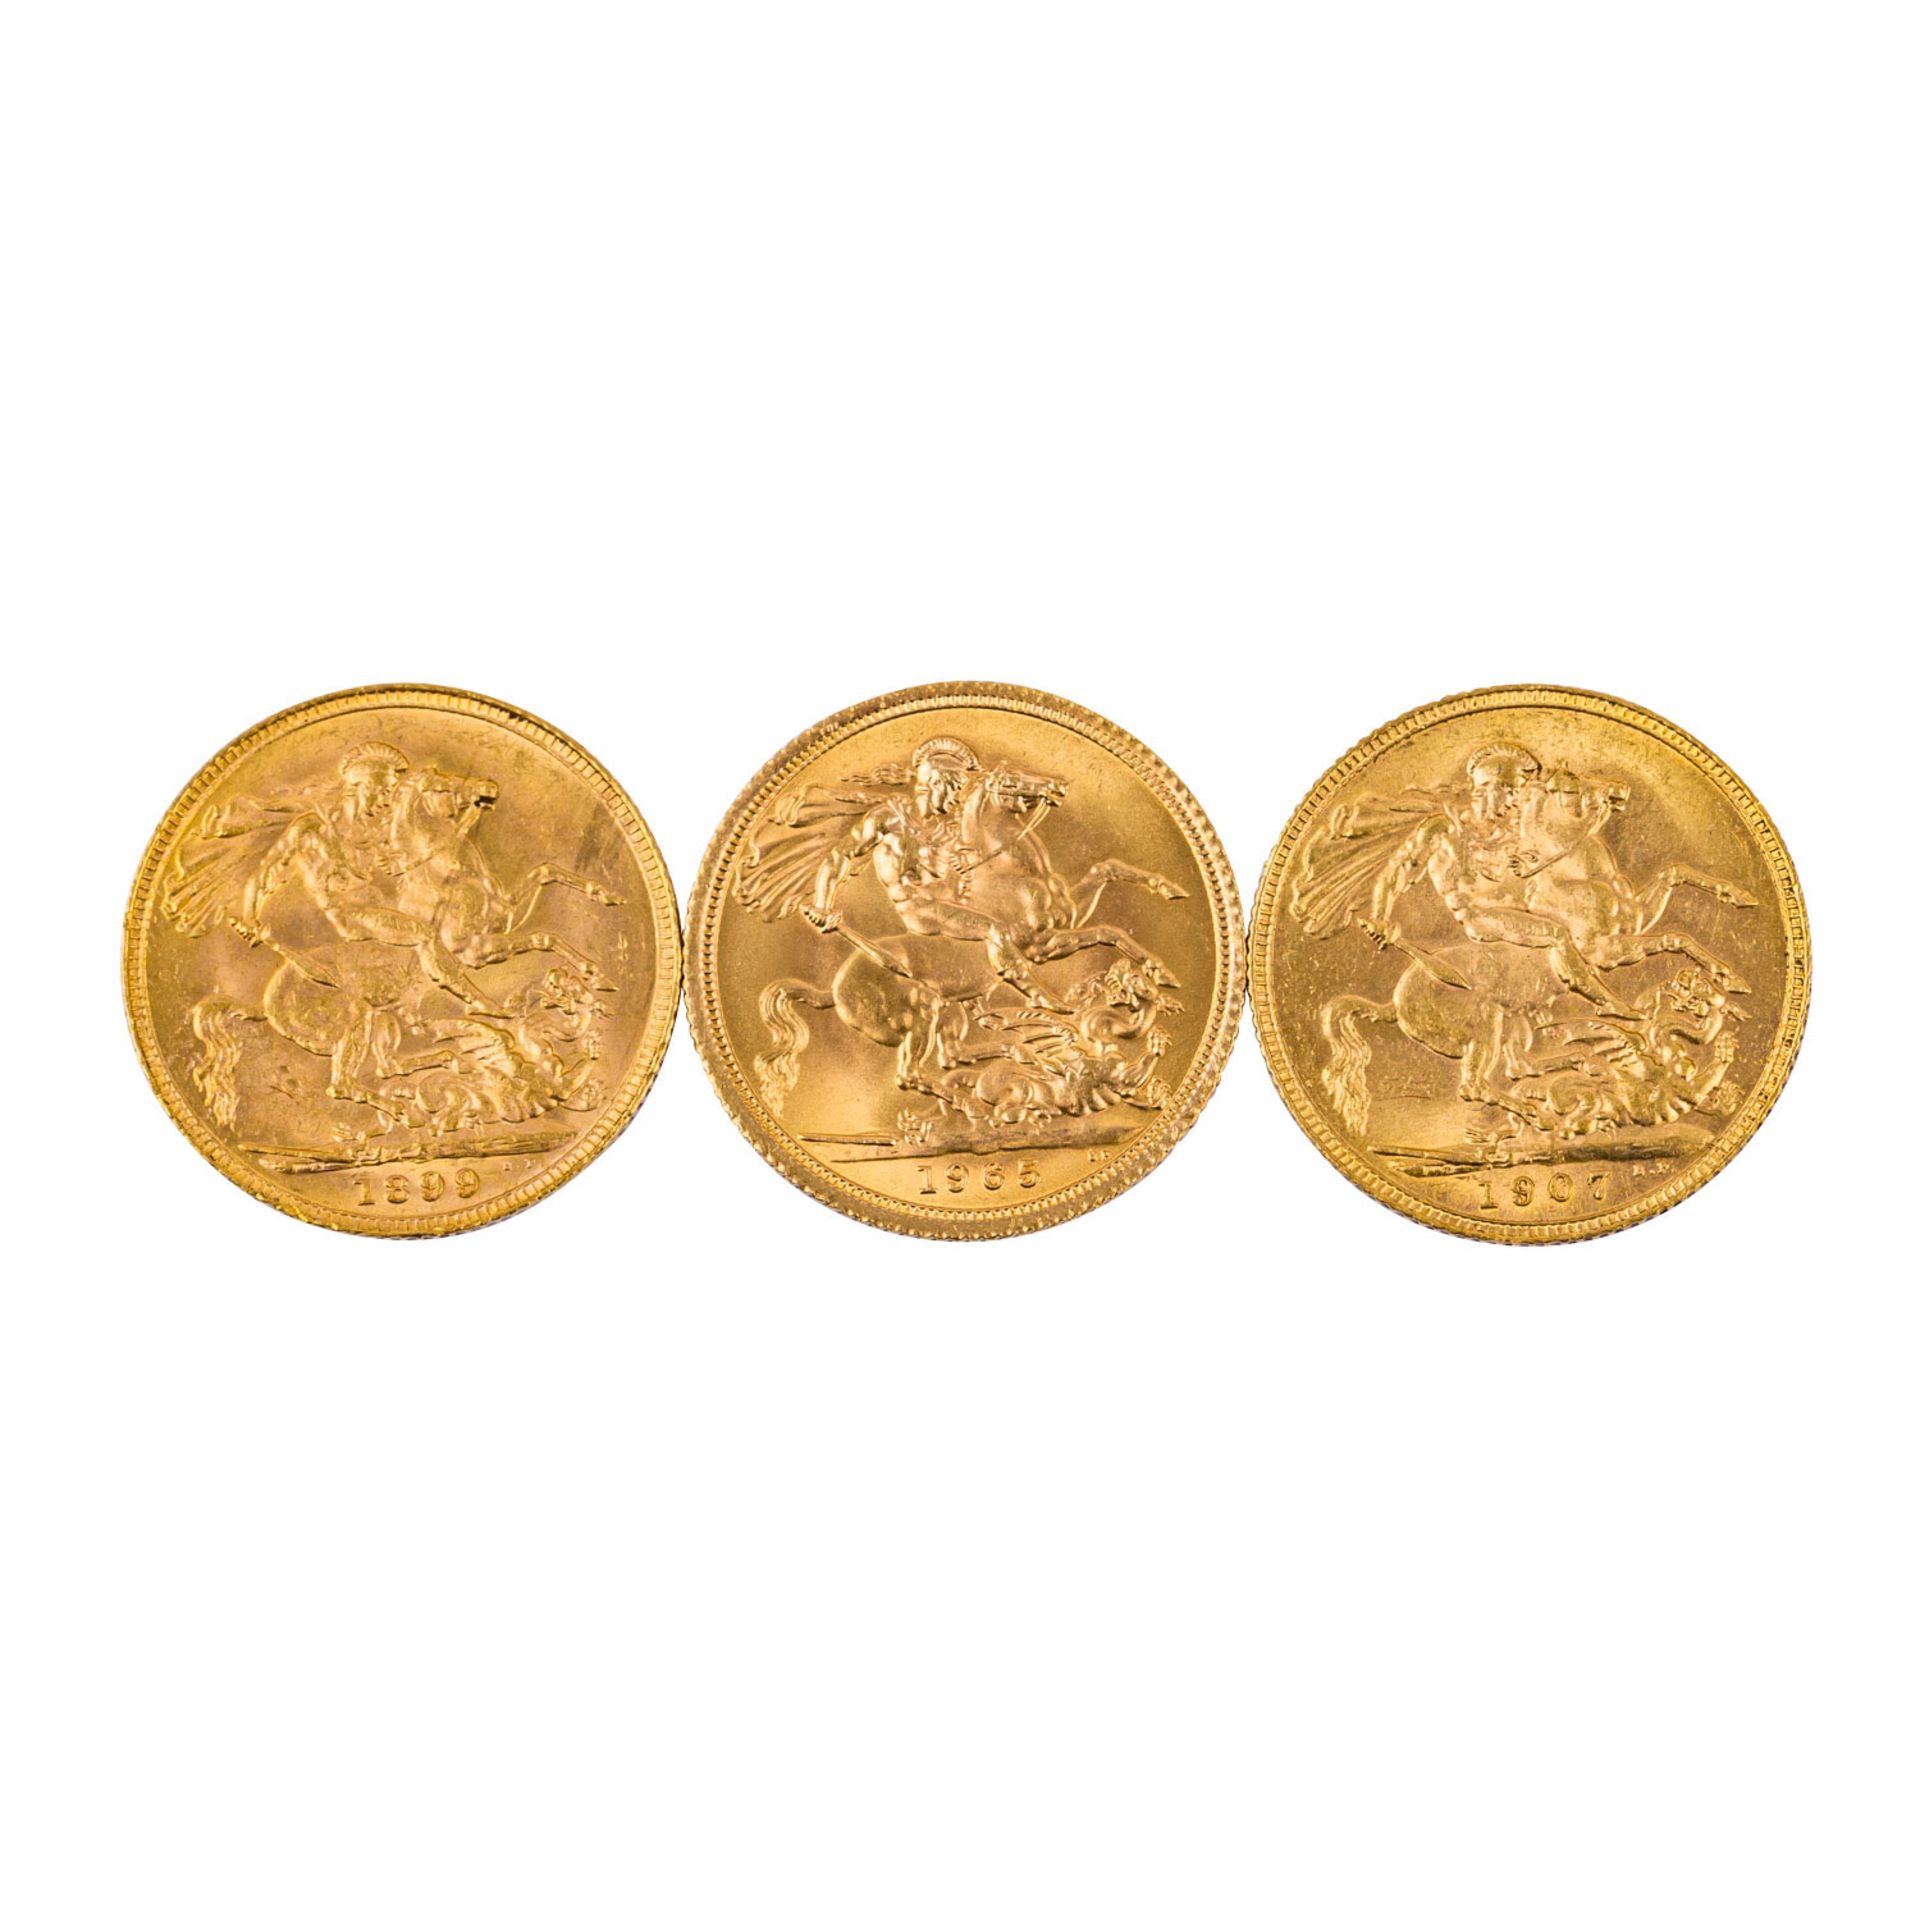 GB Gold - 3 x Sovereign,Victoria 1899/o. Mz.; Edward 1907, Elizabeth mit Schleife 1965, ca. 22 Gramm - Bild 3 aus 3